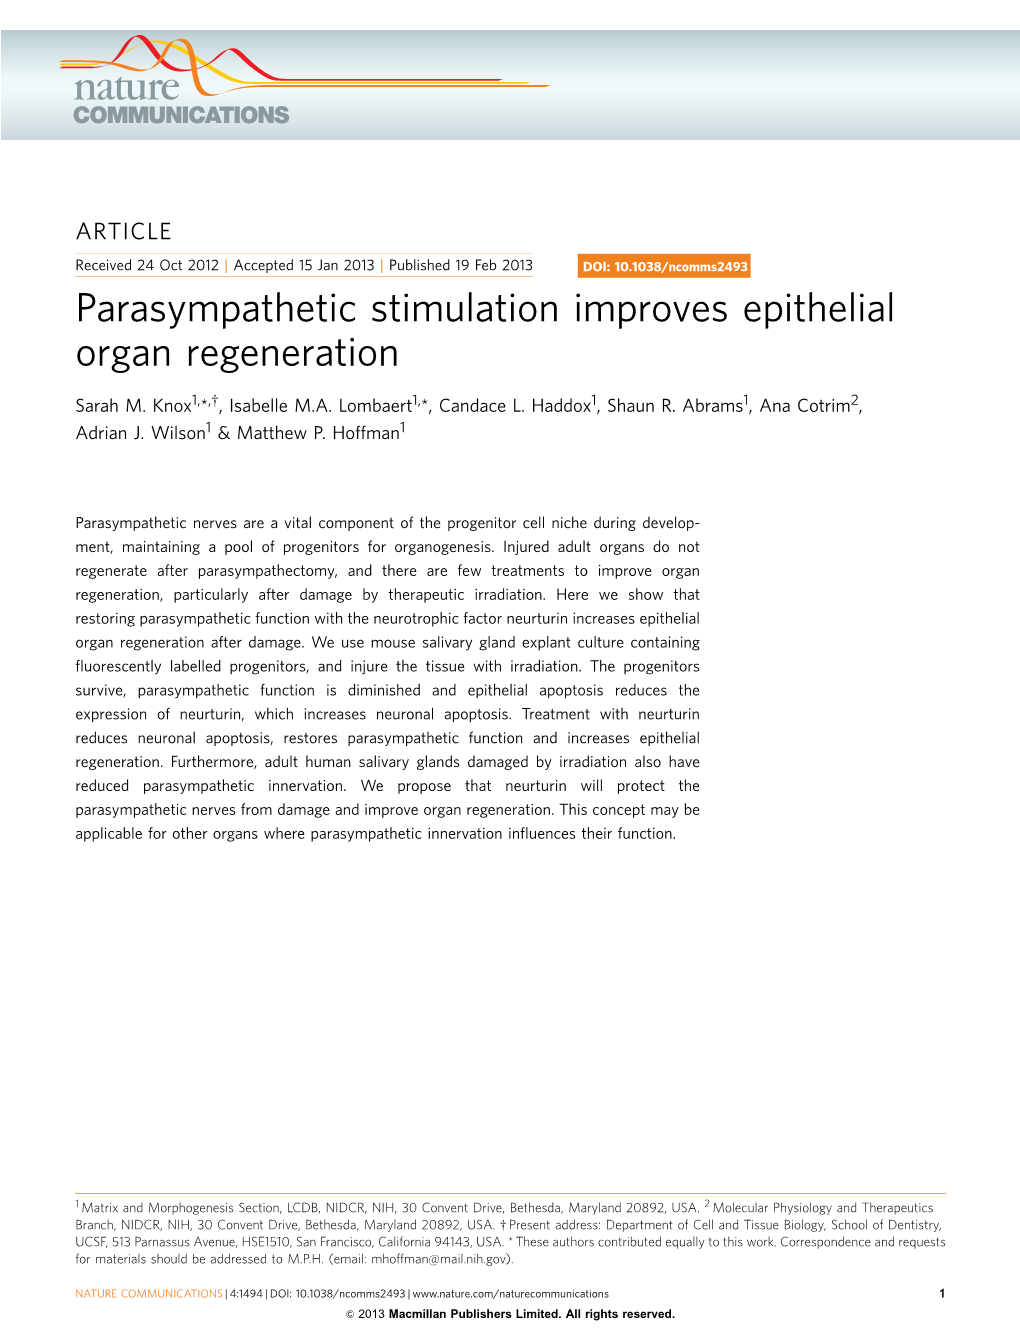 Parasympathetic Stimulation Improves Epithelial Organ Regeneration